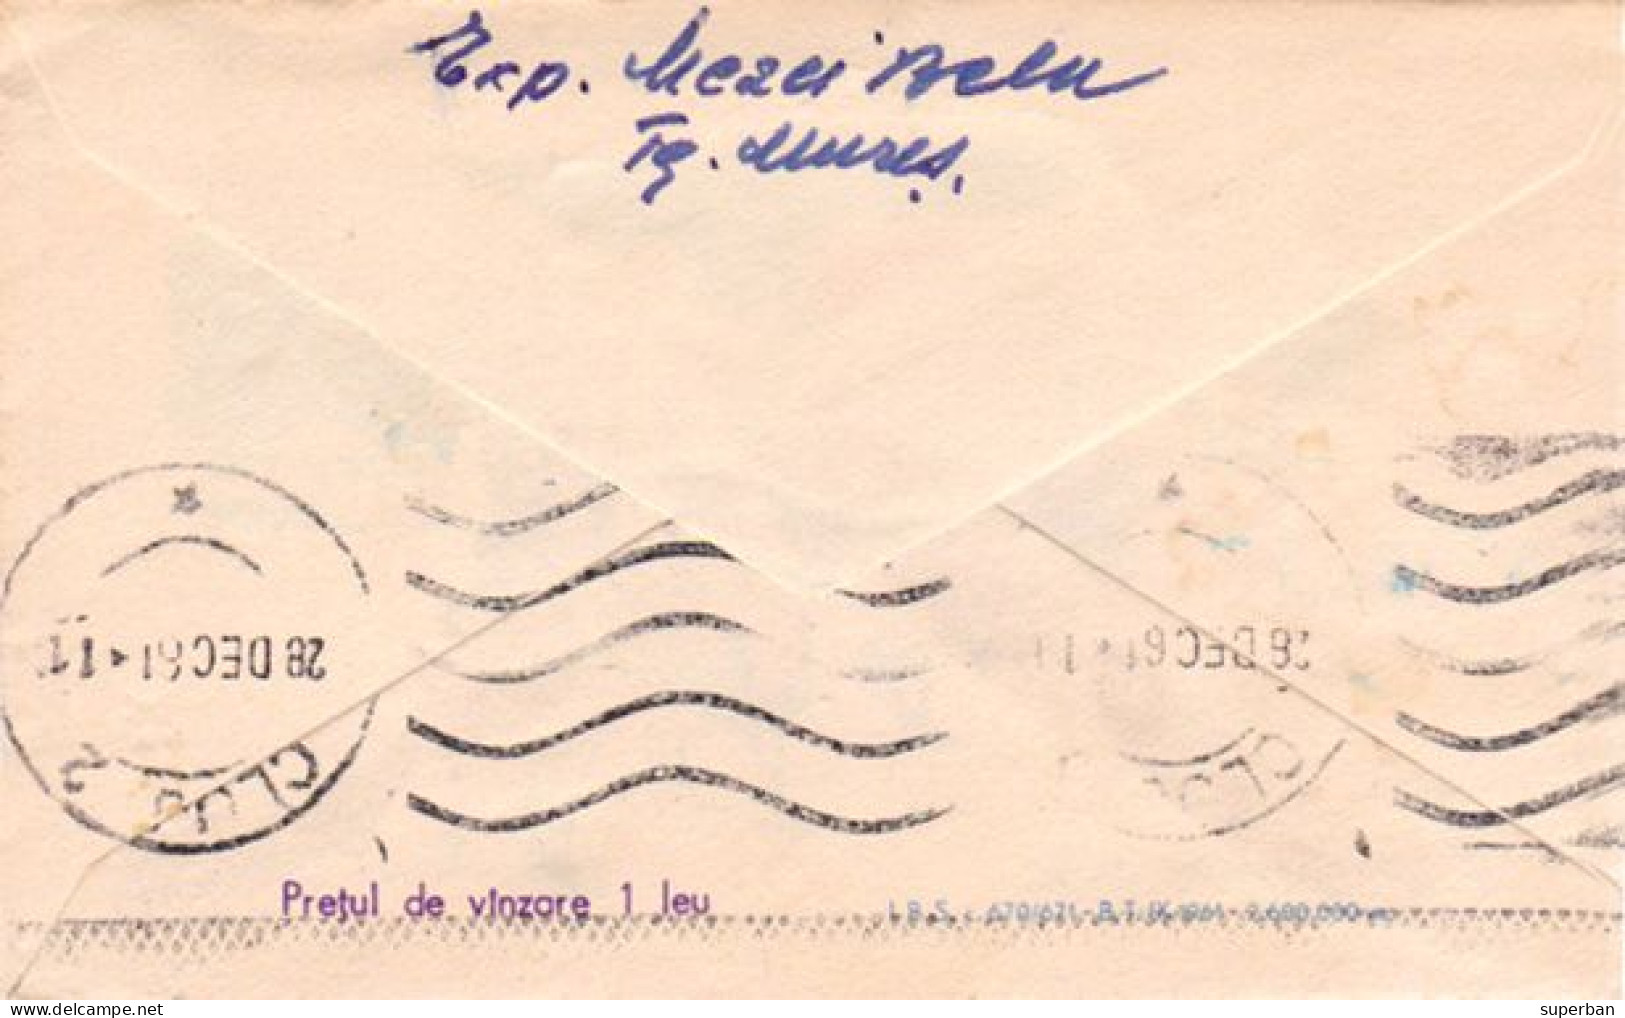 STATIONERY / ENTIER POSTAL LILLIPUTIEN ( ~ 6,5 X 10,5  CM ) - CAPRIOR / CHVREUIL Et POUPÉE / ROEBUCK ~ 1961 (an672) - Enteros Postales